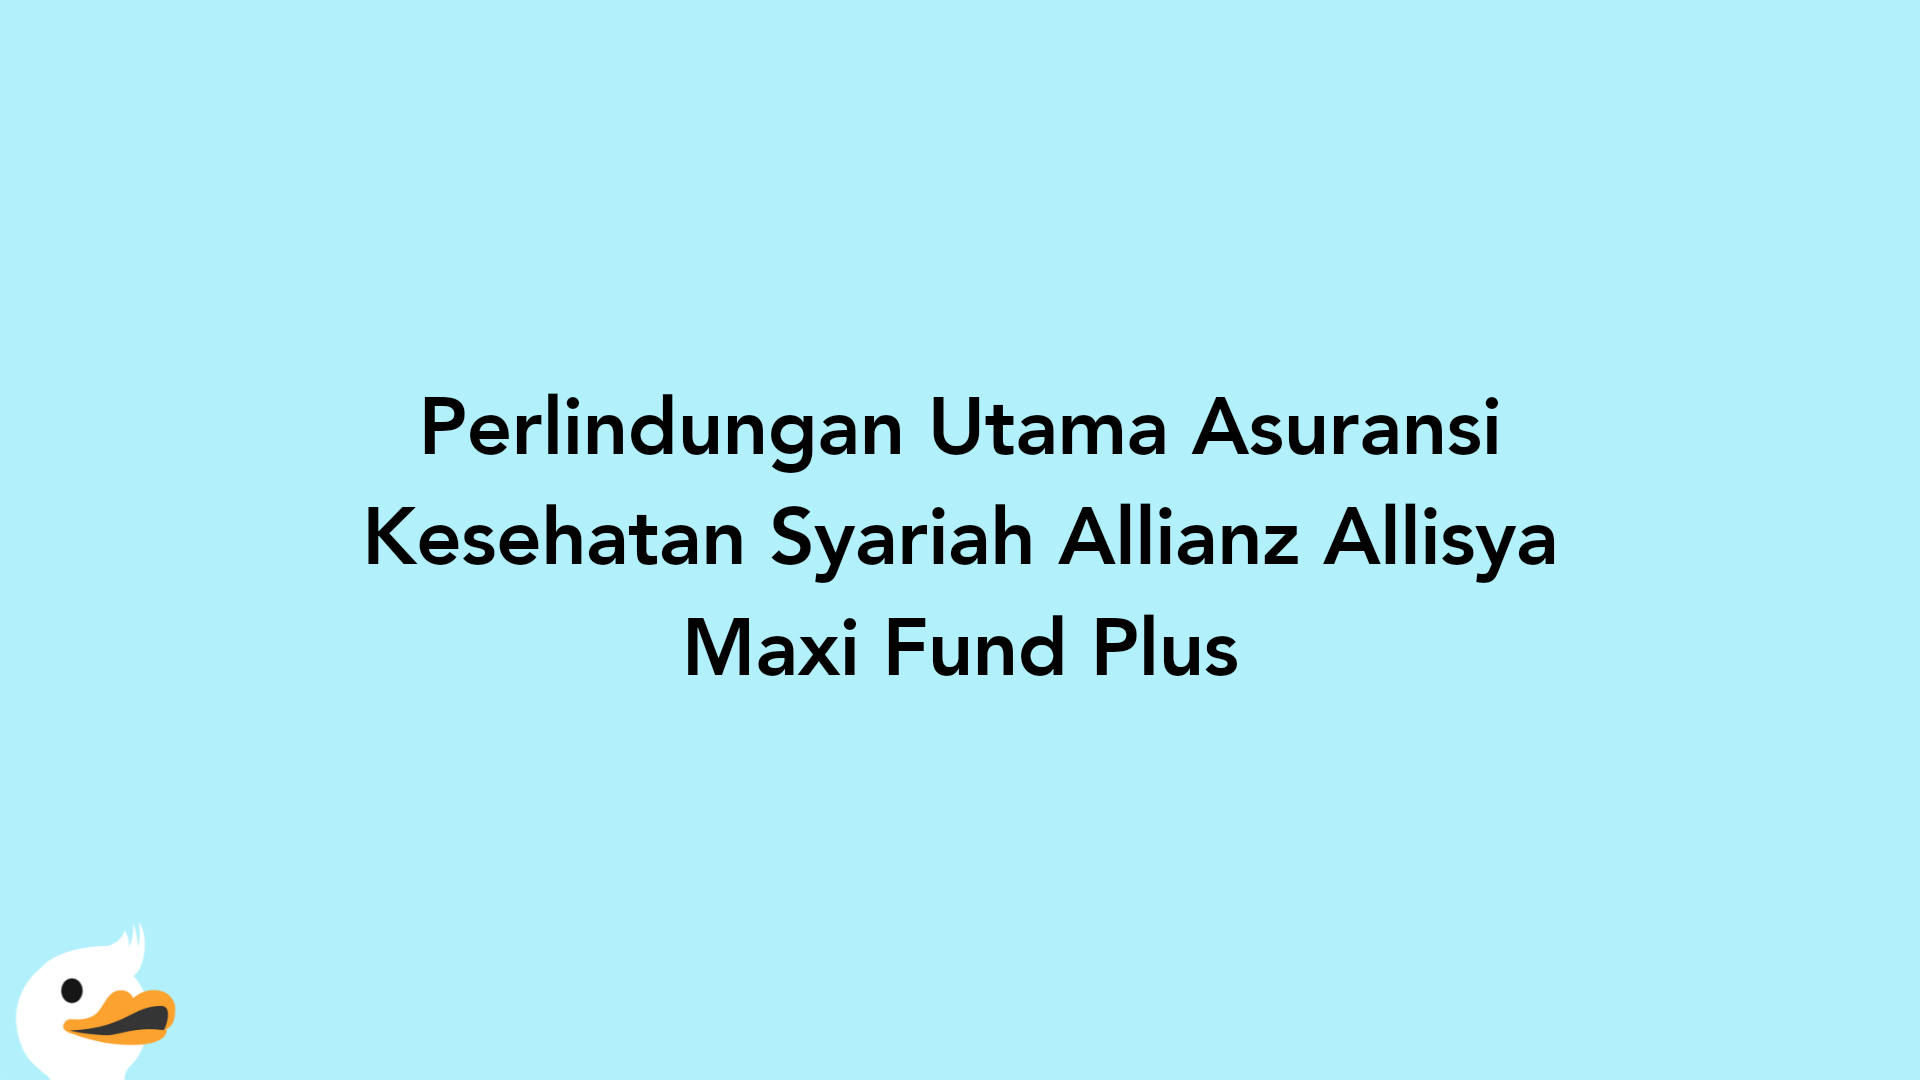 Perlindungan Utama Asuransi Kesehatan Syariah Allianz Allisya Maxi Fund Plus